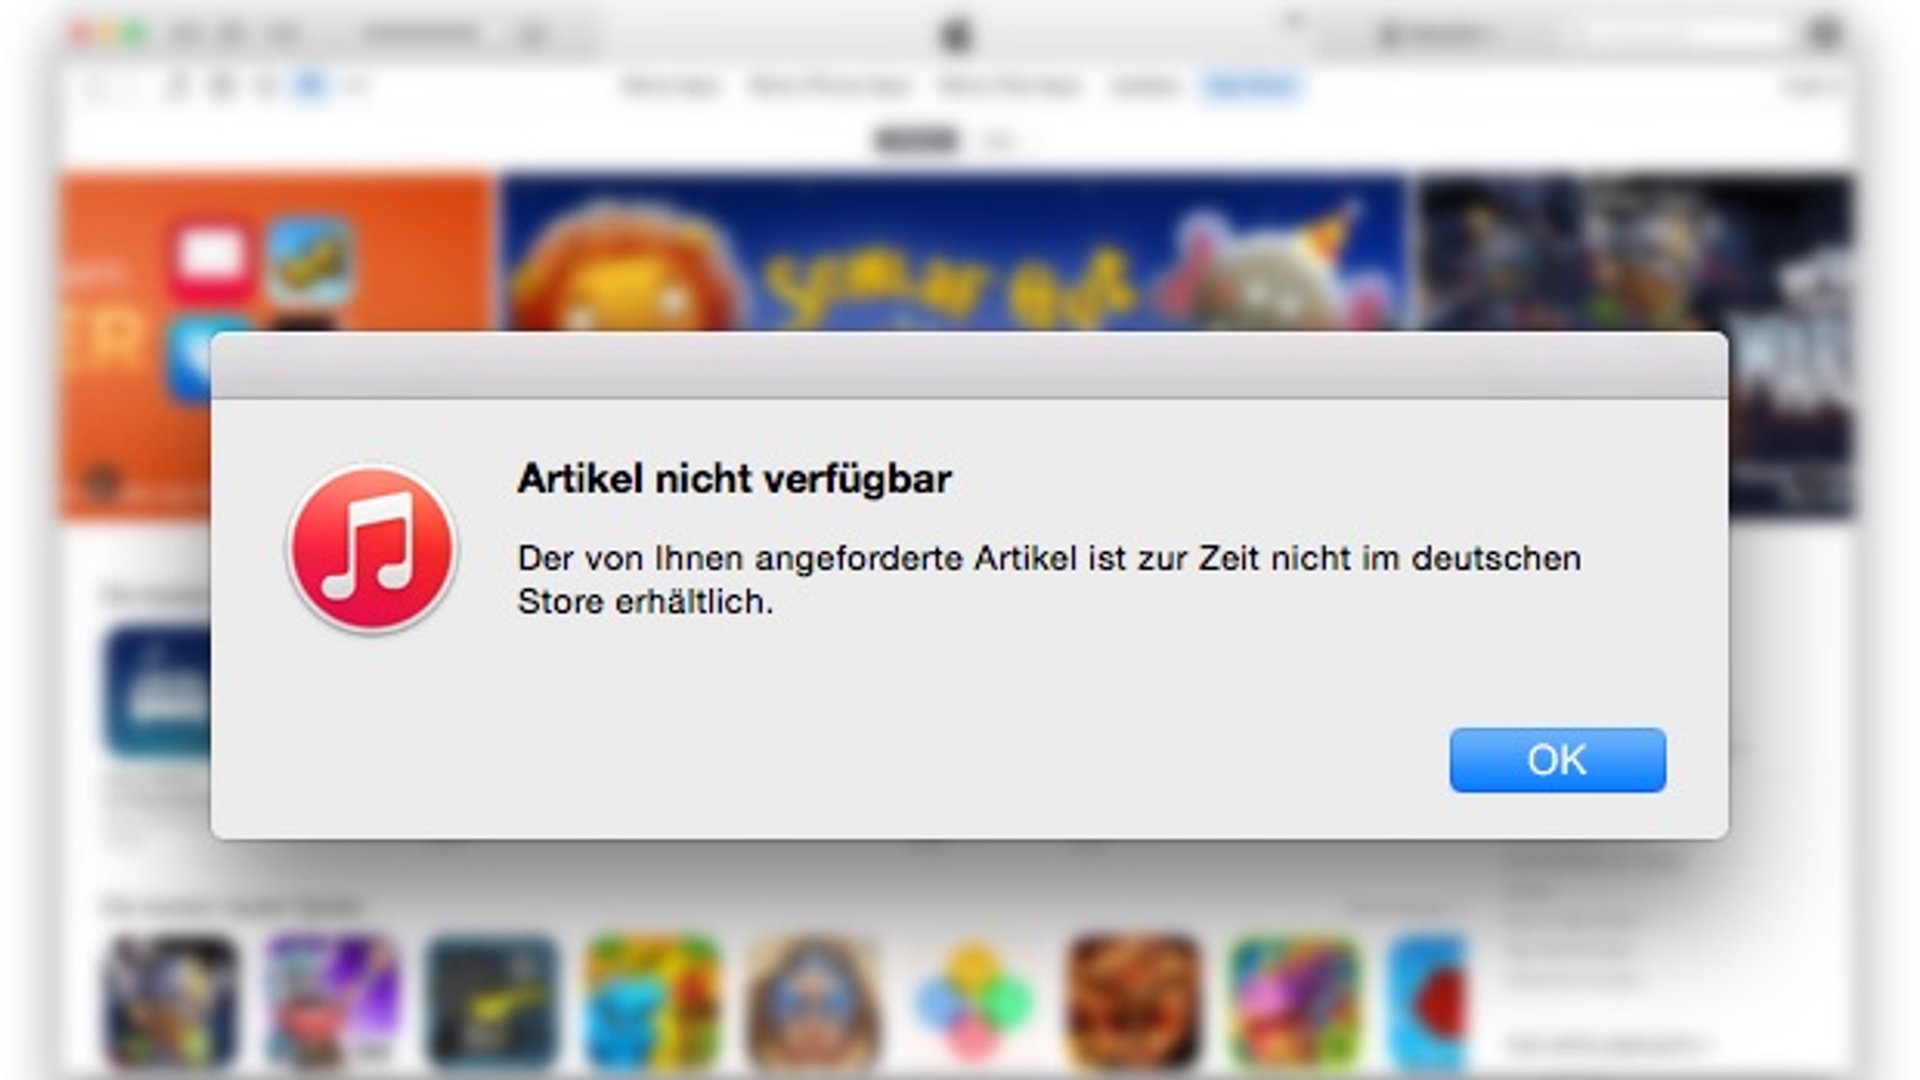 Artikel nicht verfügbar“: iTunes Store funktioniert nicht – was tun?